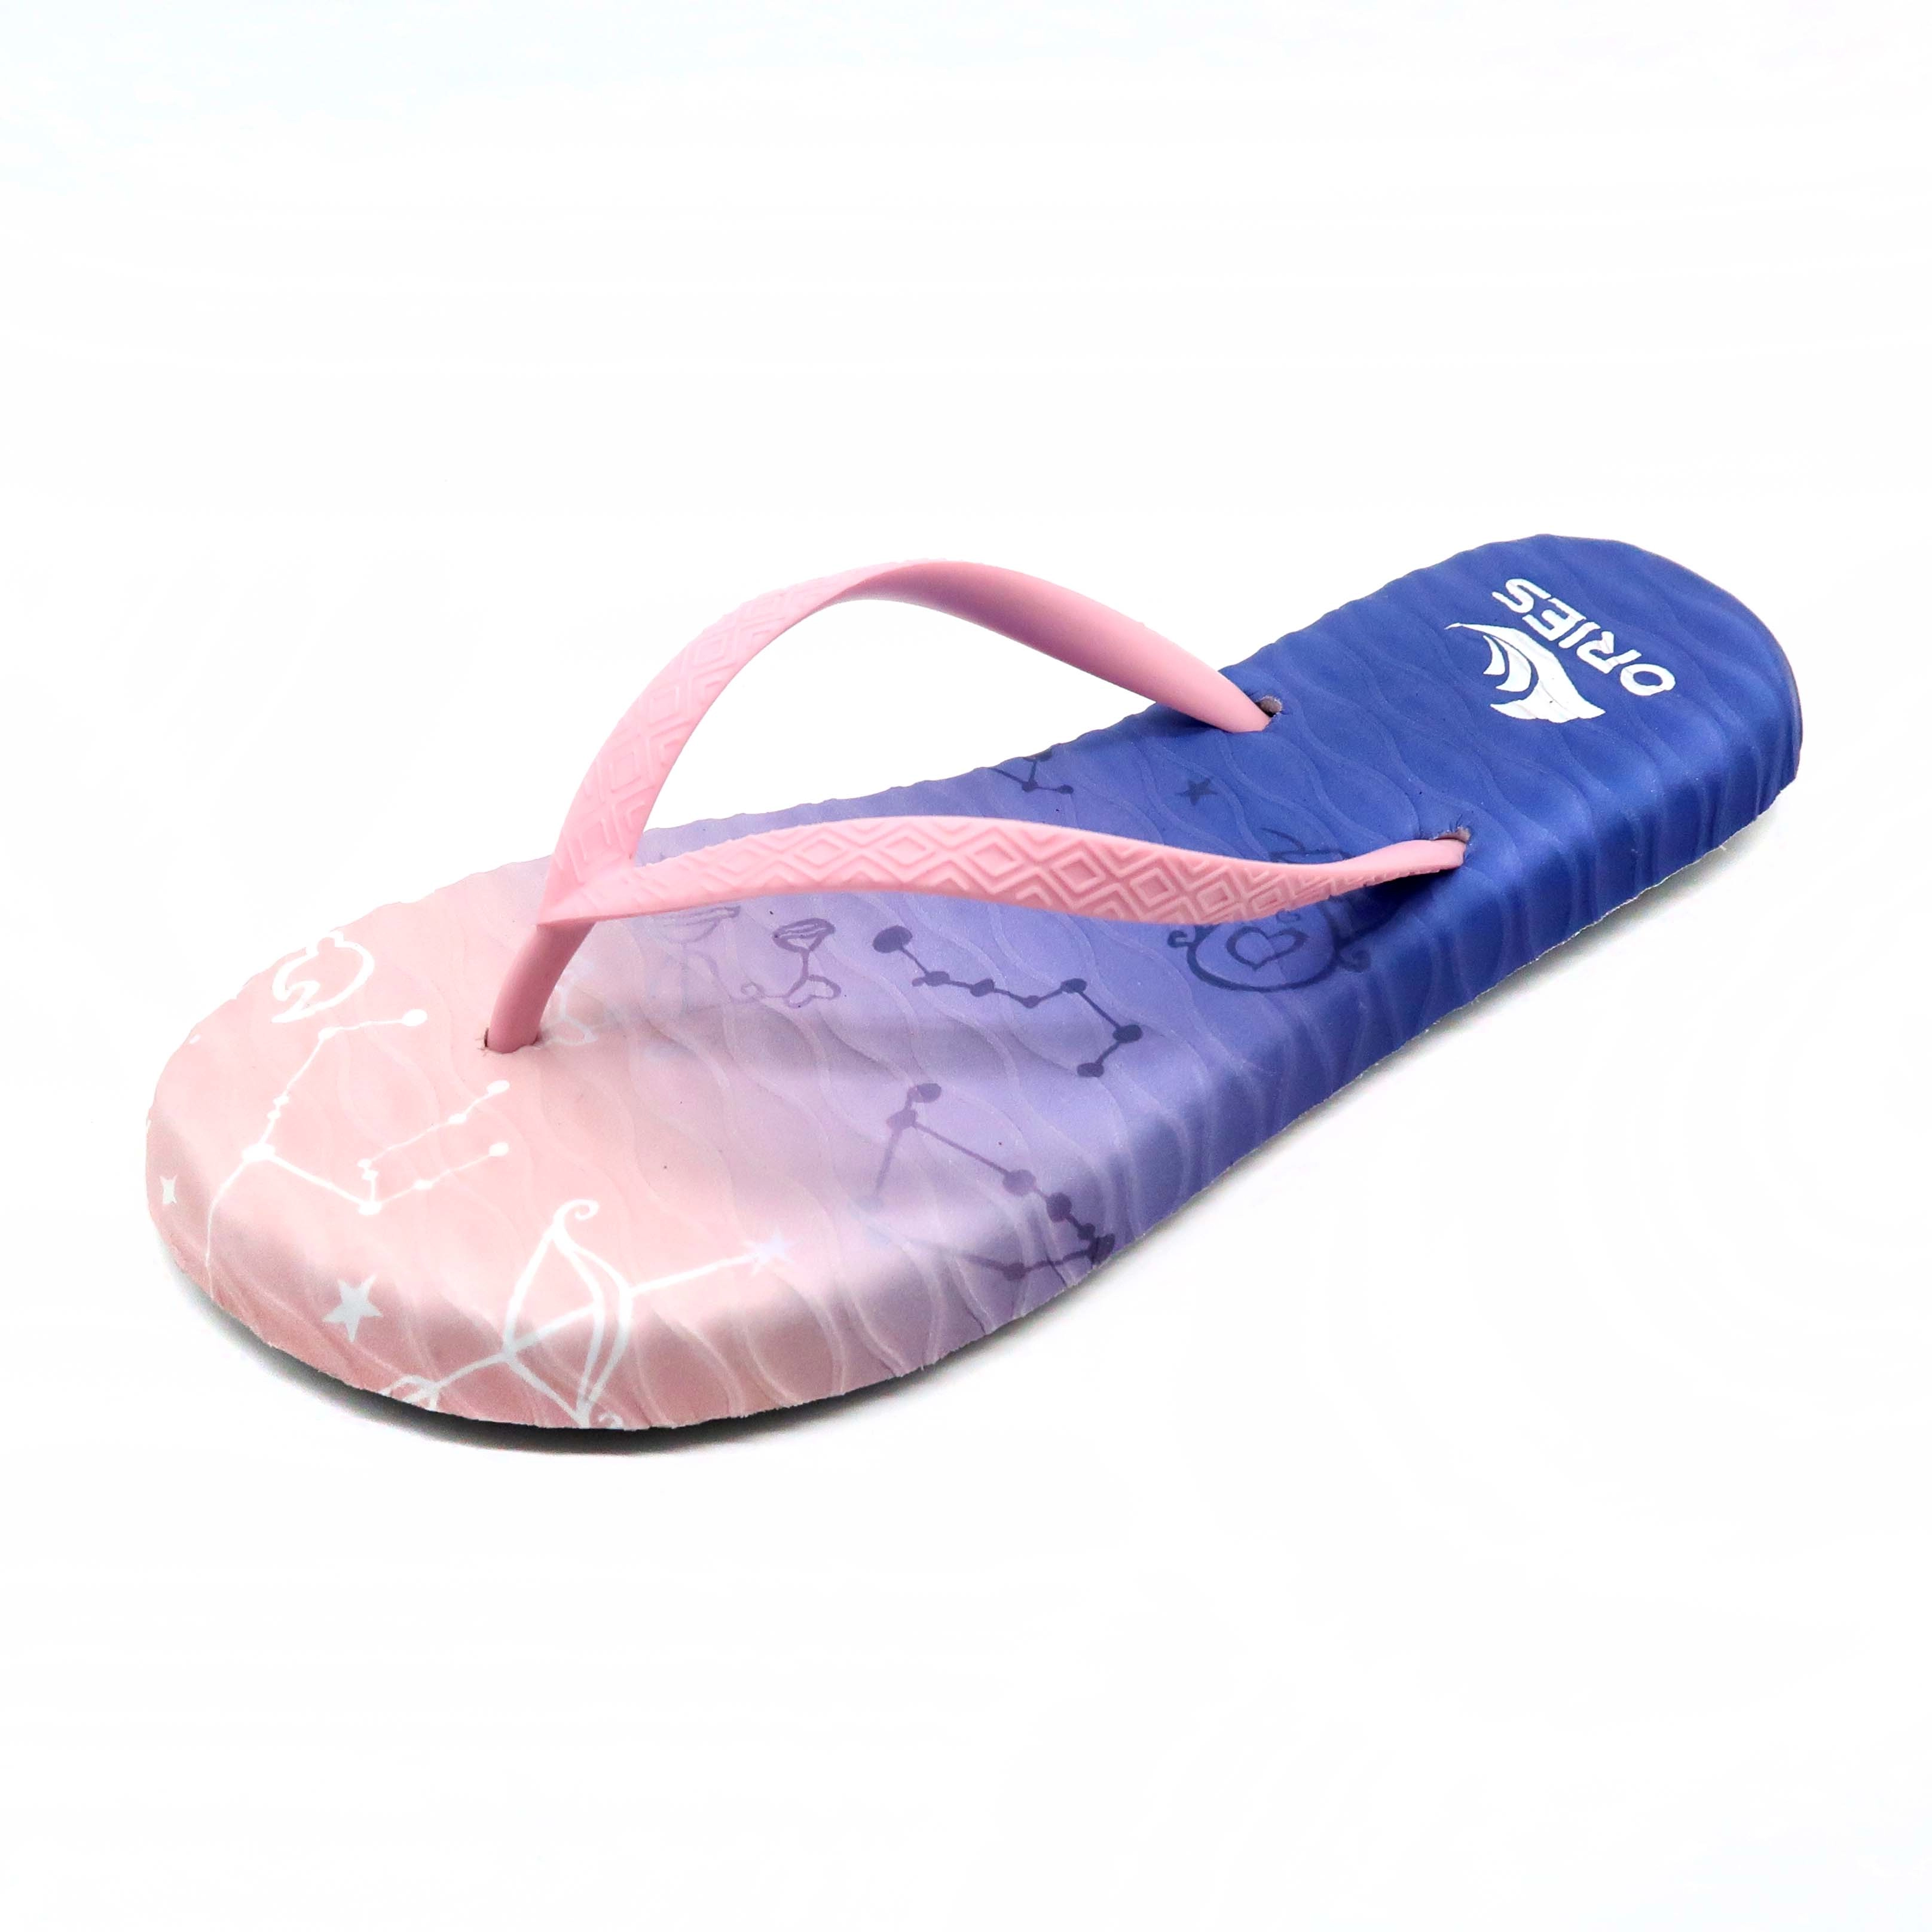 Constellation d'impression numérique UV massage fille en plein air tongs sandale